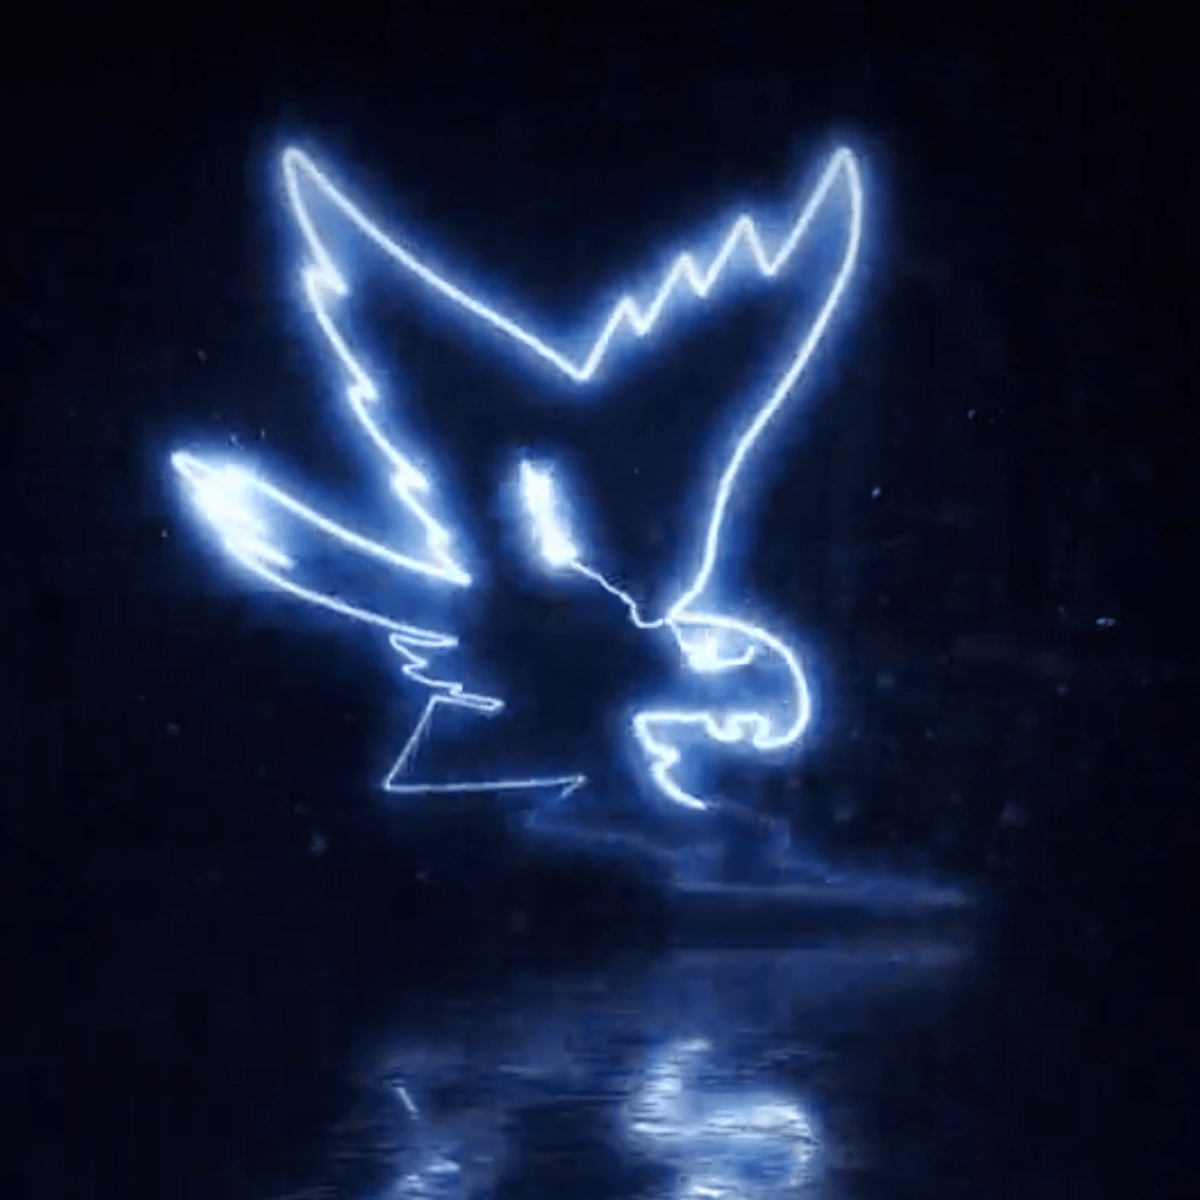 blue falcon logo